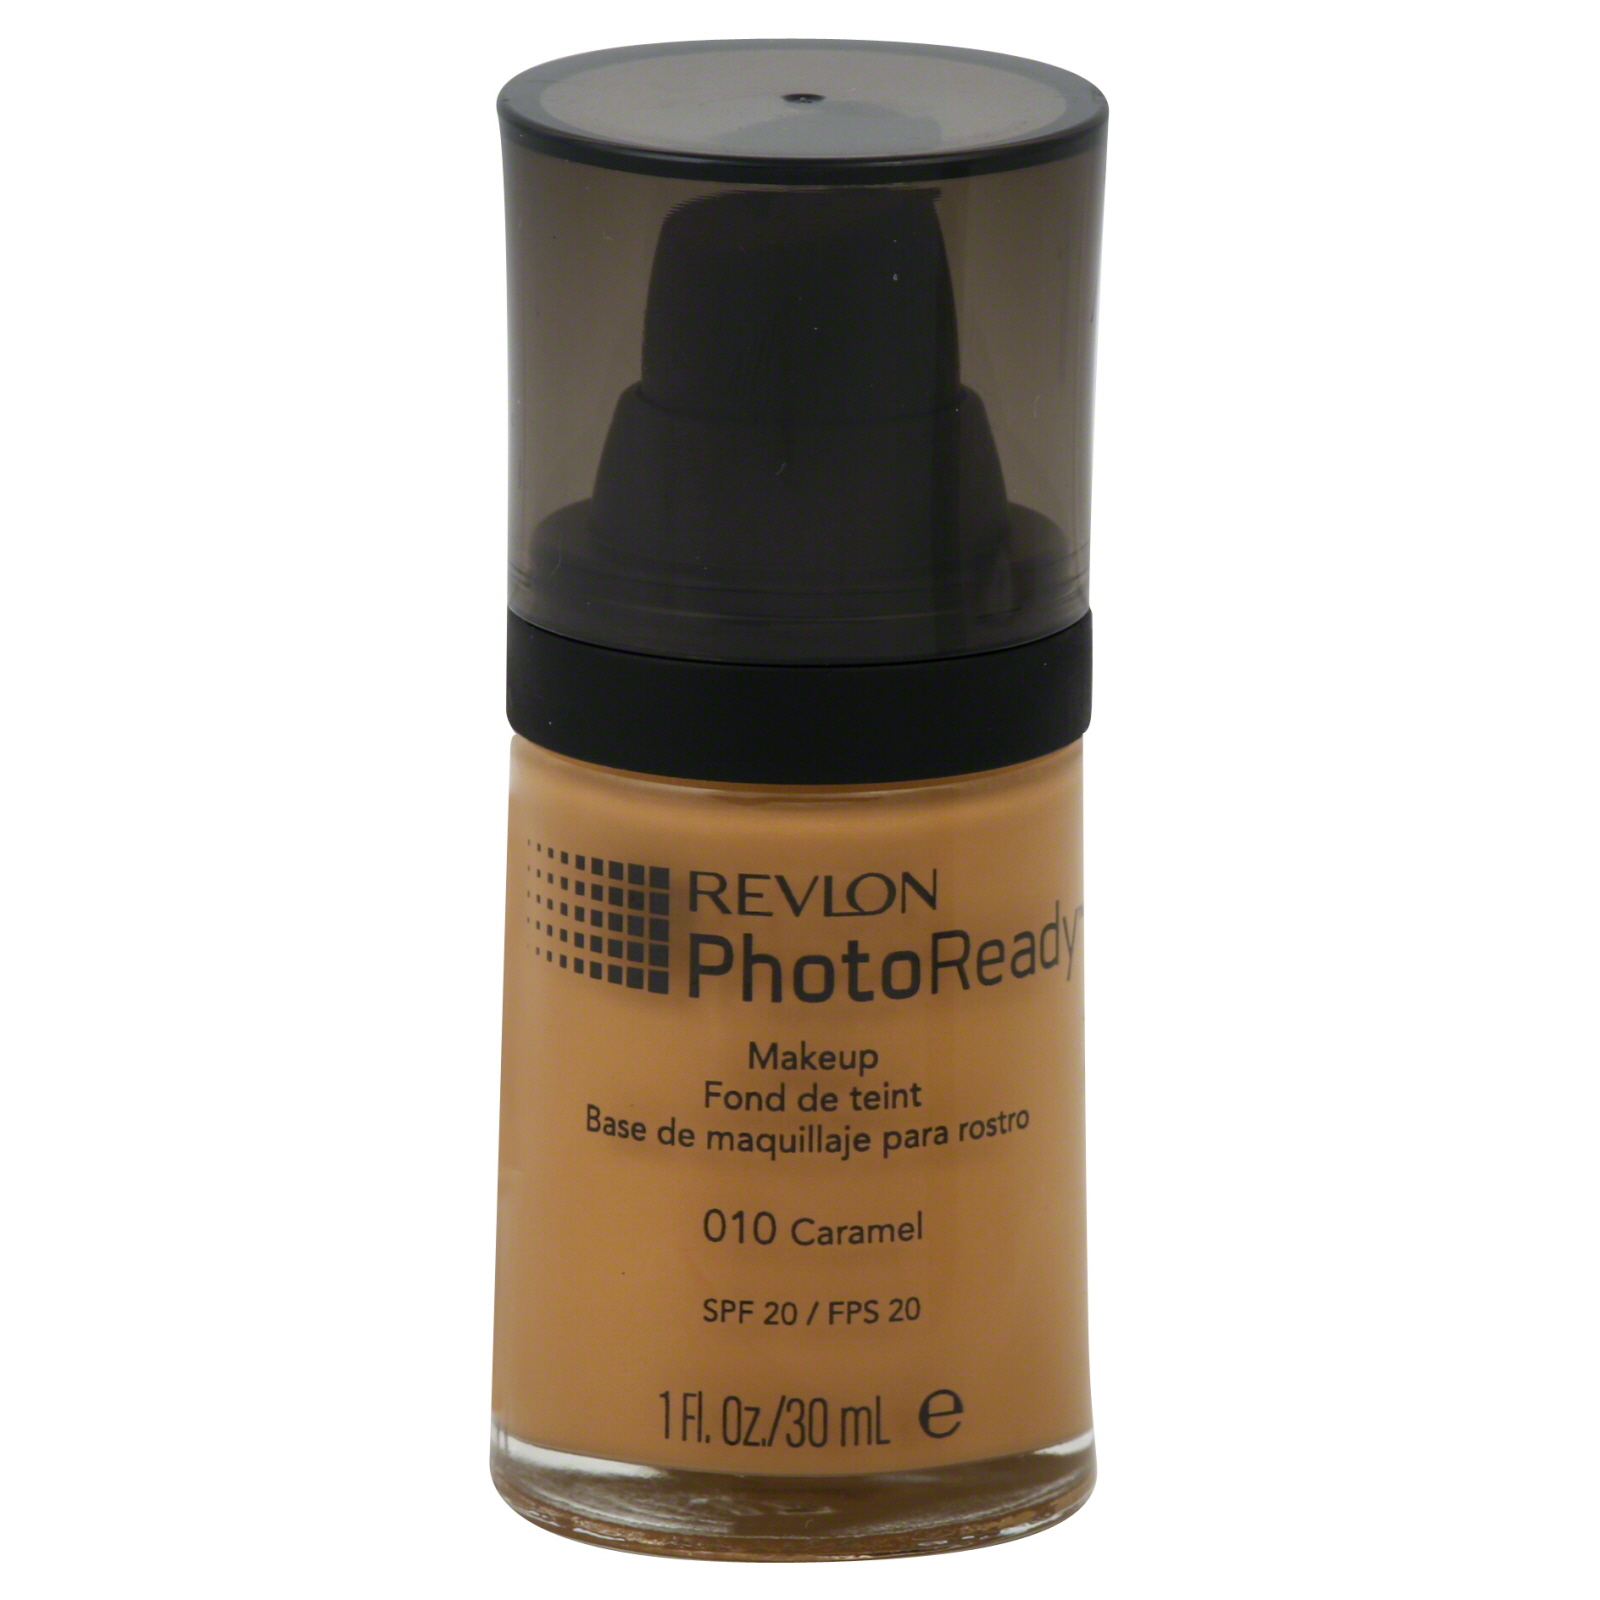 Revlon PhotoReady Makeup, Caramel 010, 1 fl oz (30 ml)